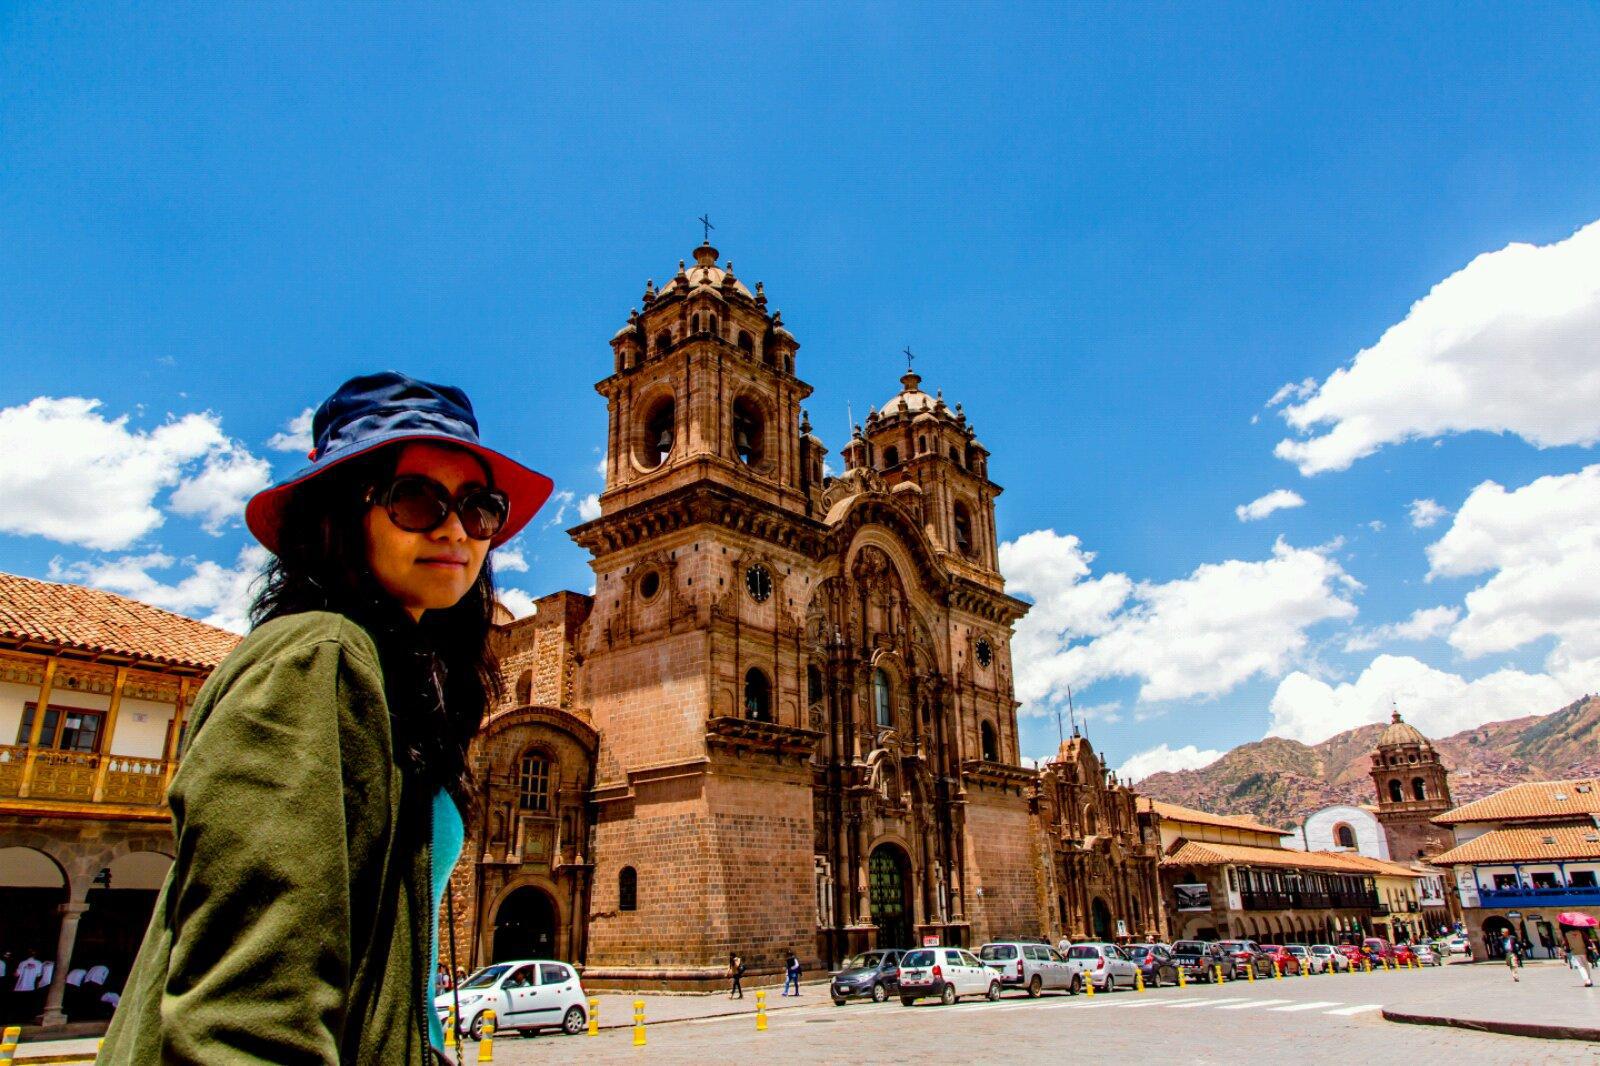 帝国斜阳-库斯科  作为秘鲁第四大城市-库斯科曾经是印加帝国的首都